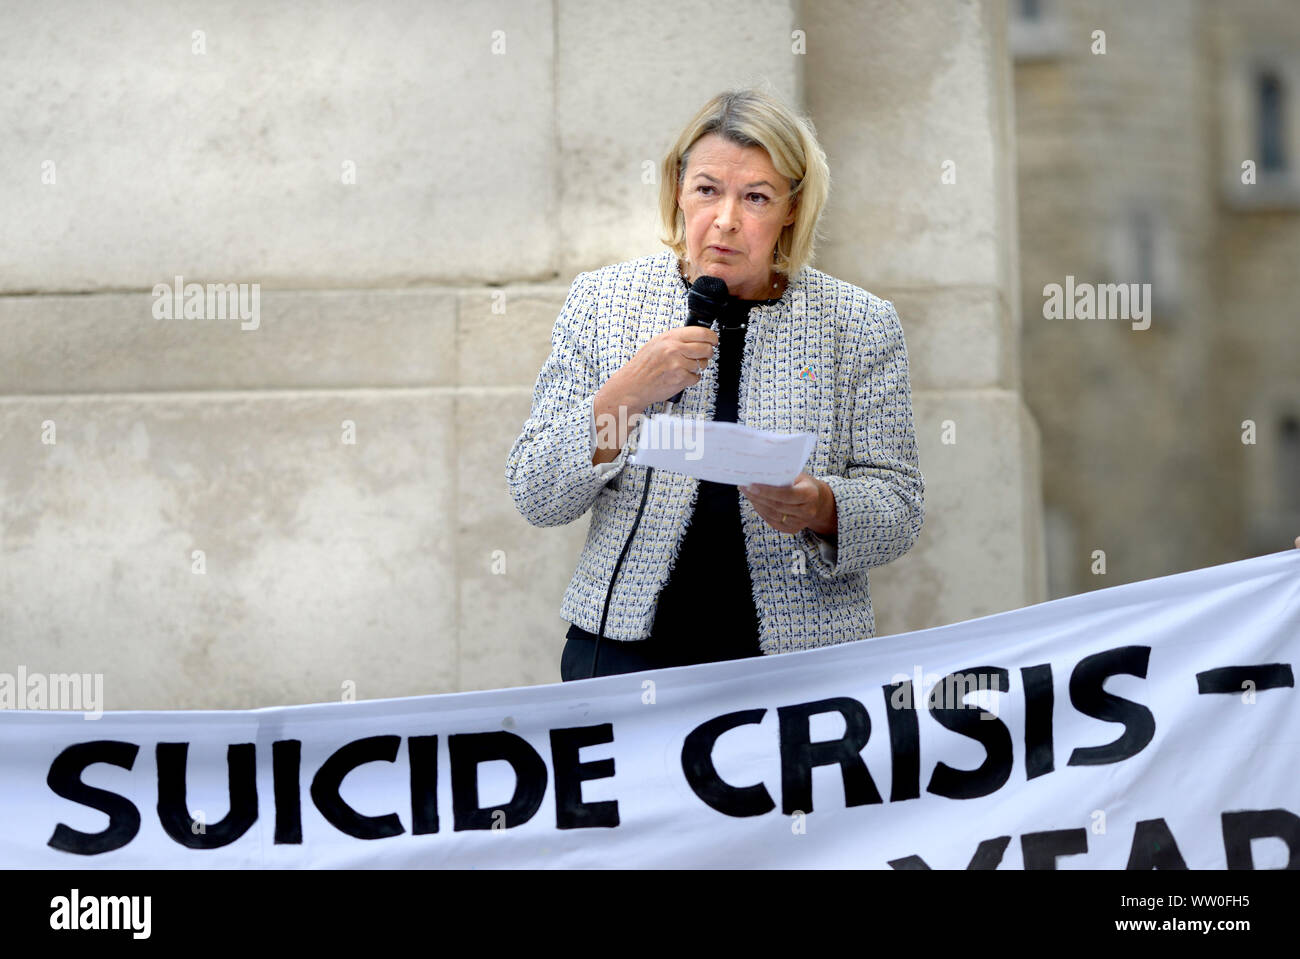 Barbara Keeley MP (Lab : Worsley et Eccles Sud) Contre-ministre pour la santé mentale et de soins sociaux - s'exprimant lors d'une manifestation en face du Parlement sur le monde Banque D'Images